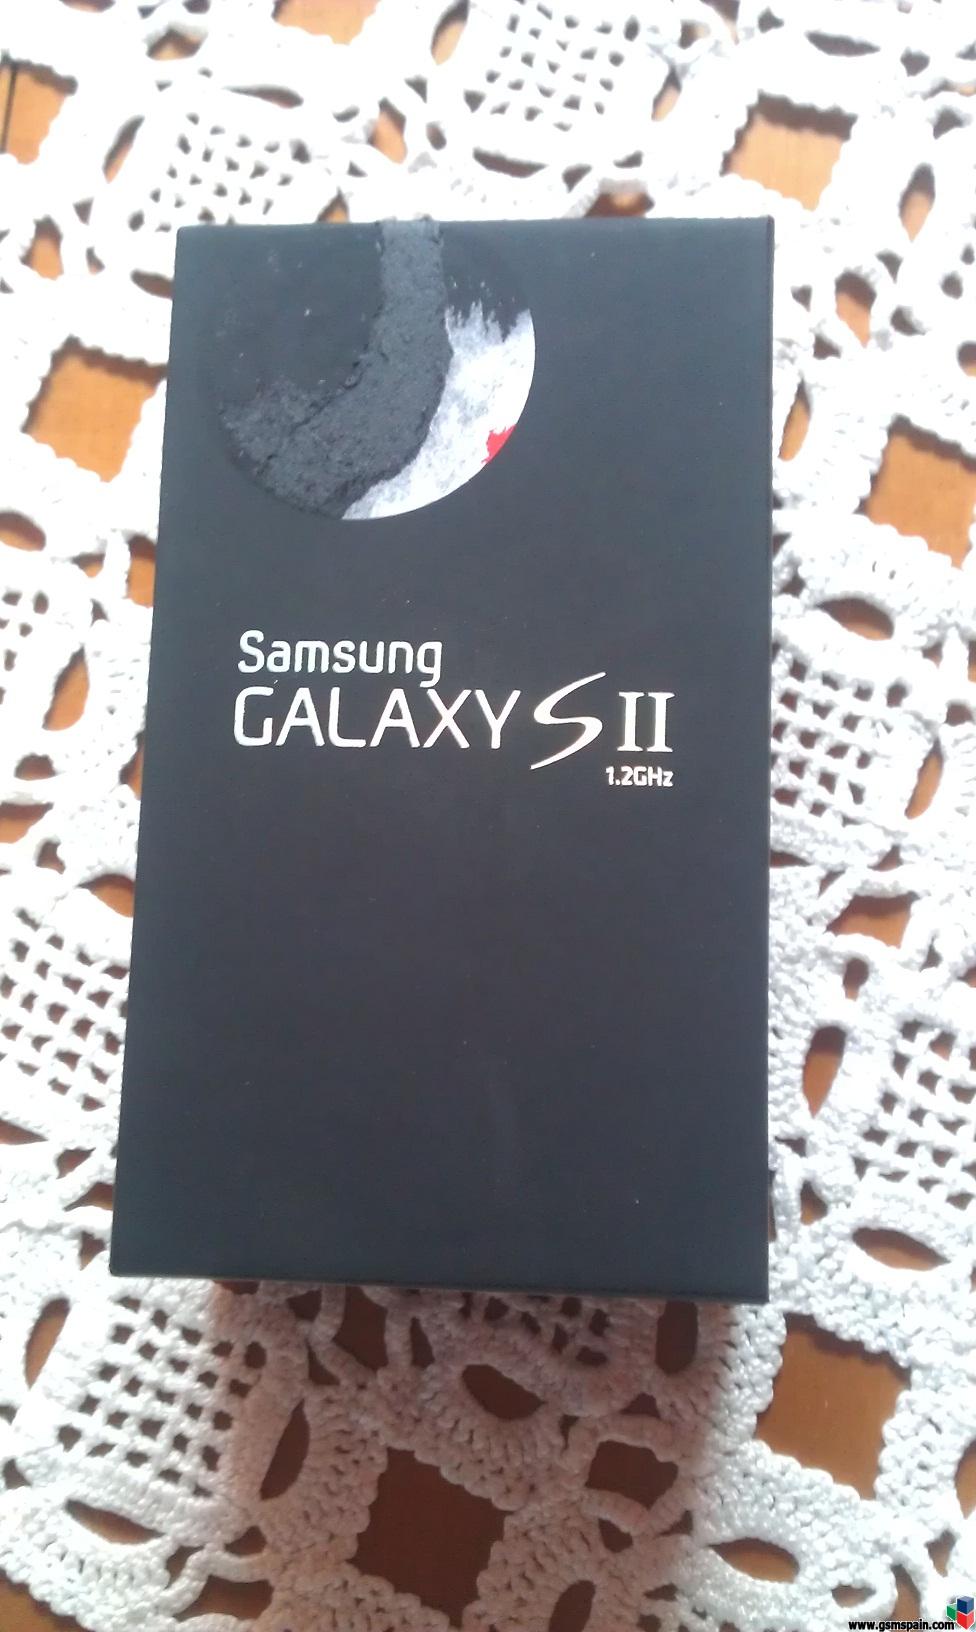 [VENDO] Samsung Galaxy S 2. Nuevo a estrenar. Con factura